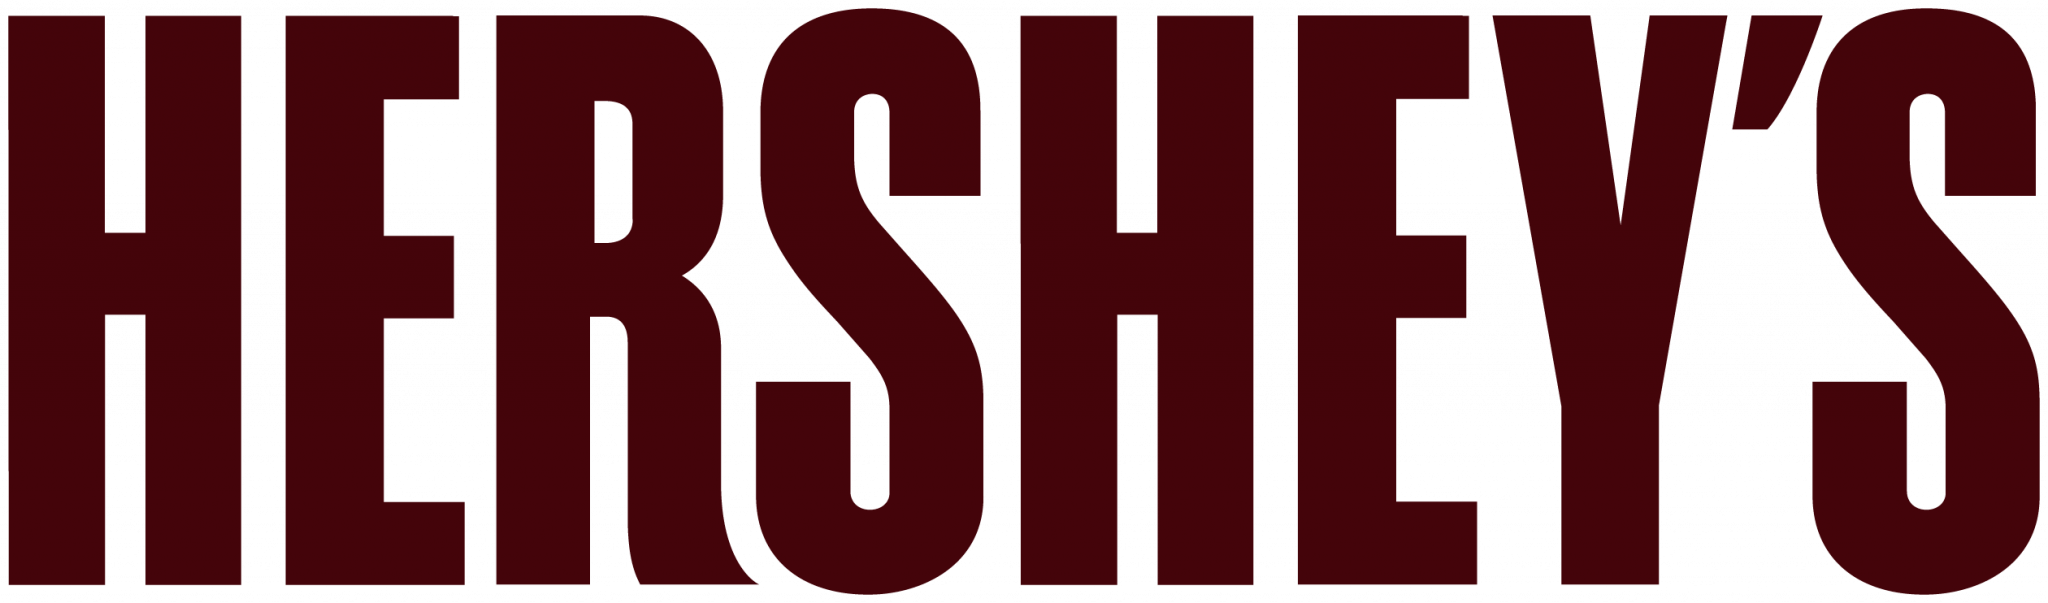 hersheys-logo-2048x603